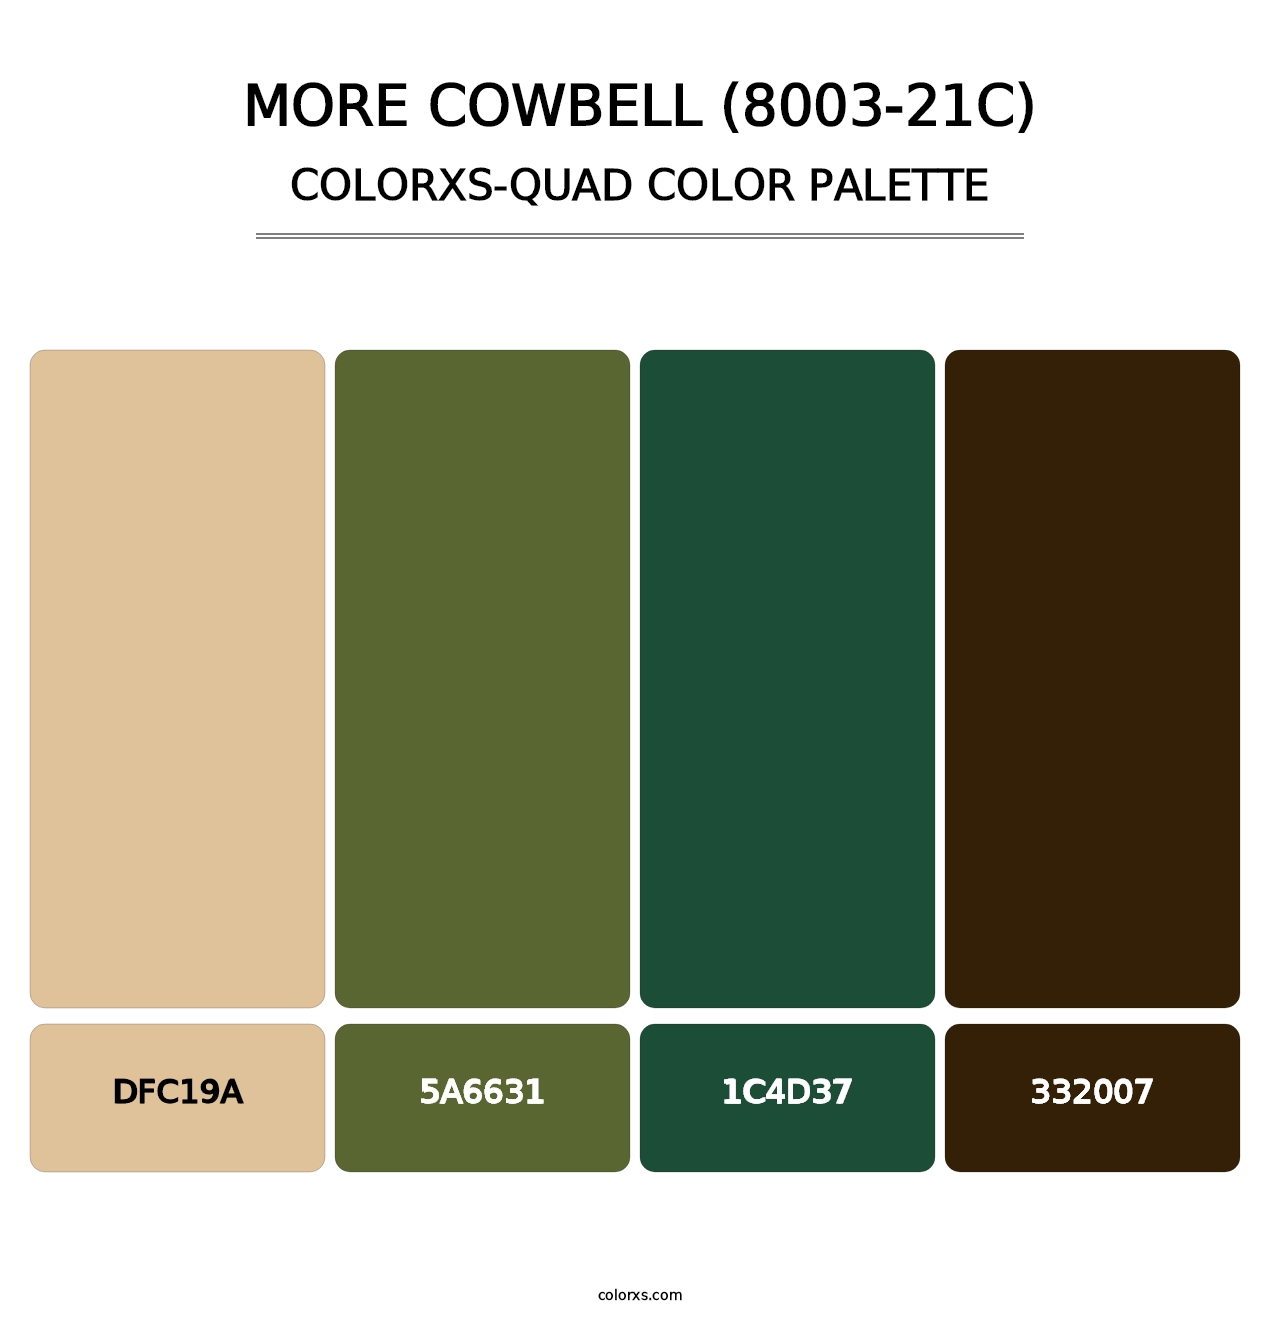 More Cowbell (8003-21C) - Colorxs Quad Palette